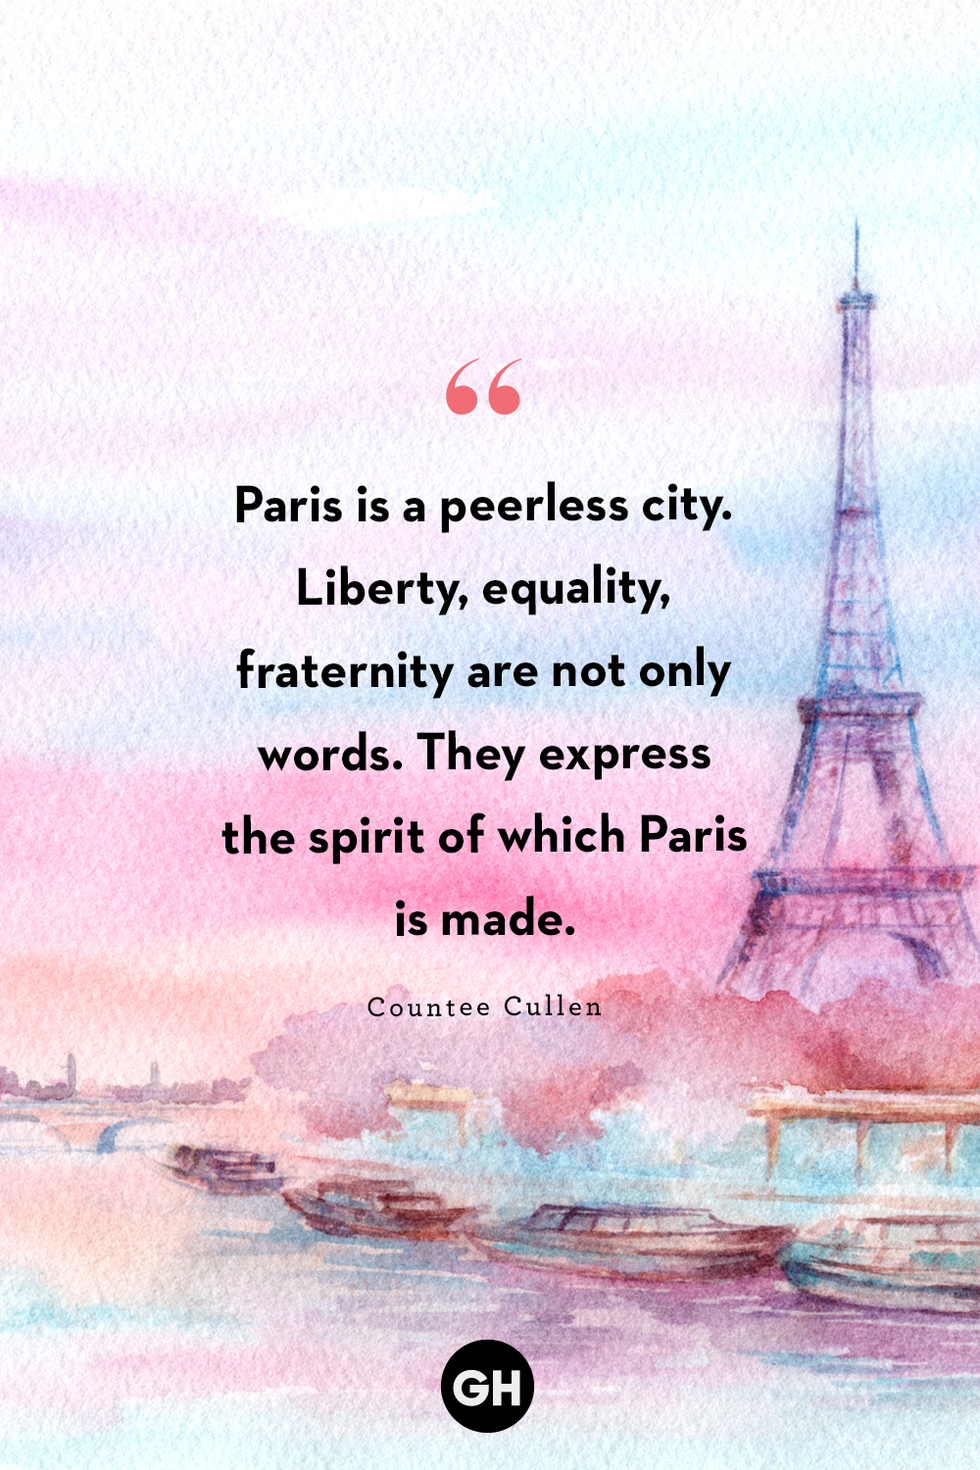 34 Best Paris Quotes - Dreamy Sayings About Paris for Instagram